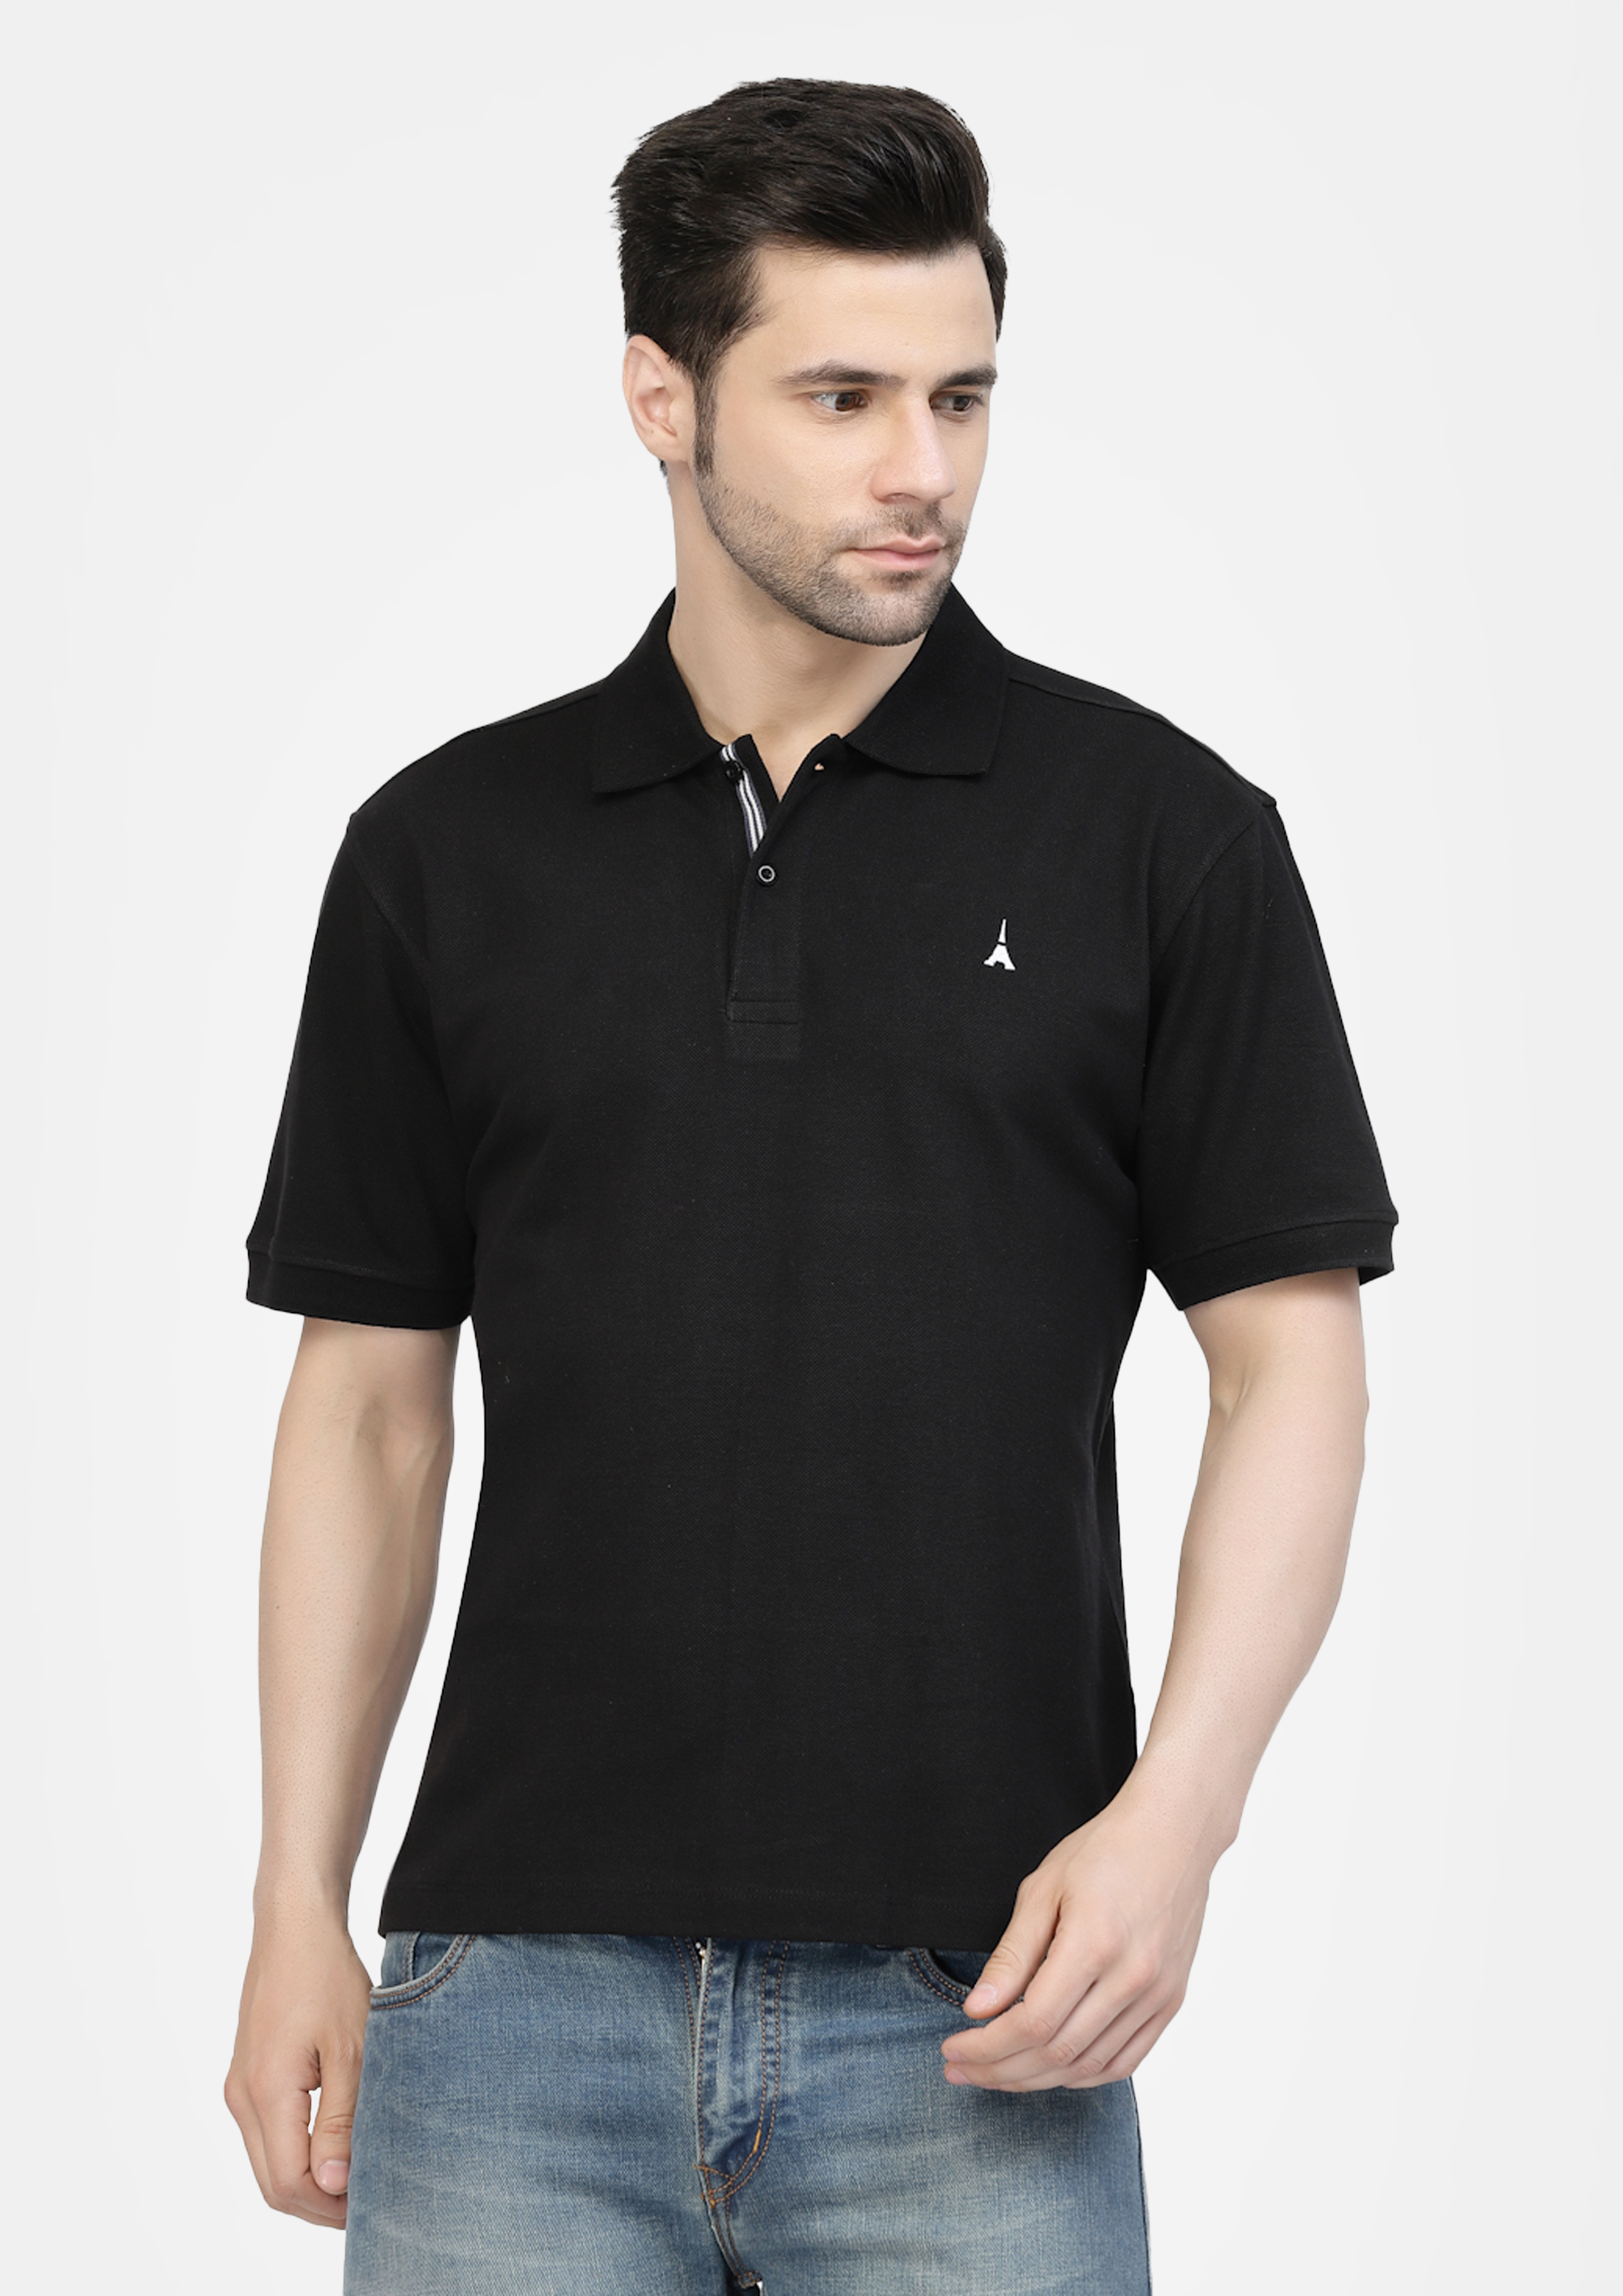 Black Premium Polo Tshirt  by Gavin Paris